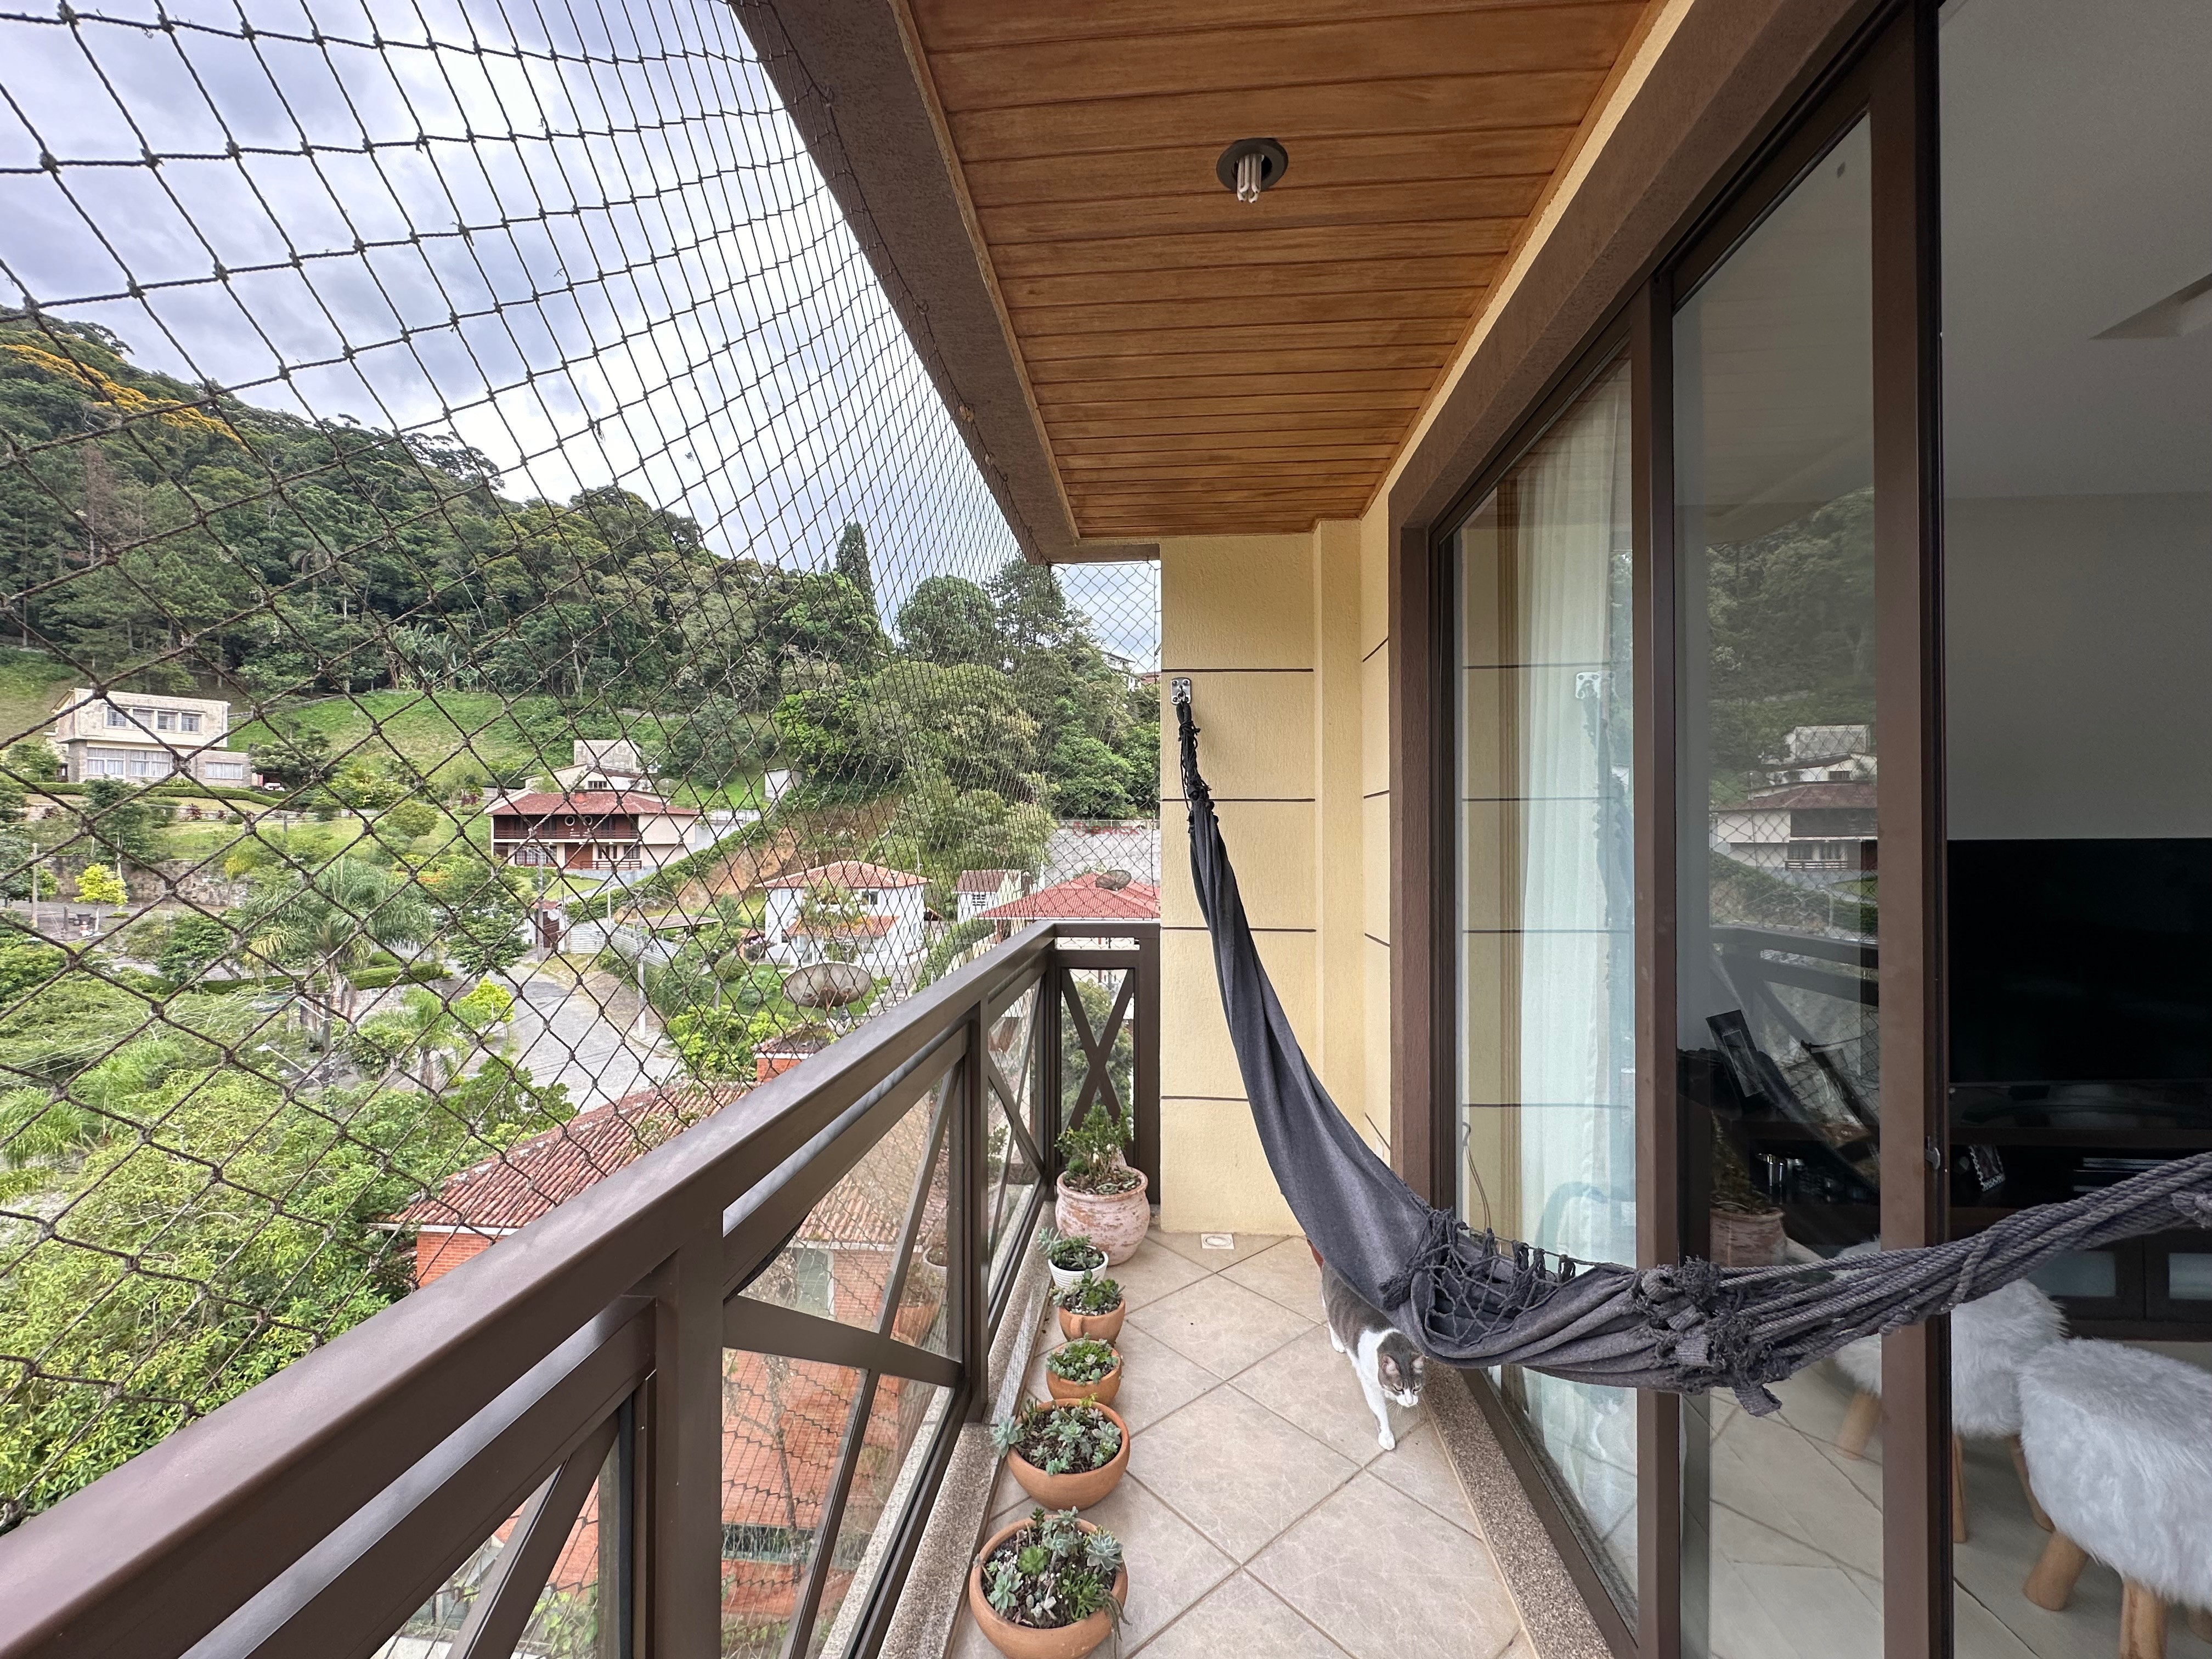 Apartamento à venda em Taumaturgo, Teresópolis - RJ - Foto 4